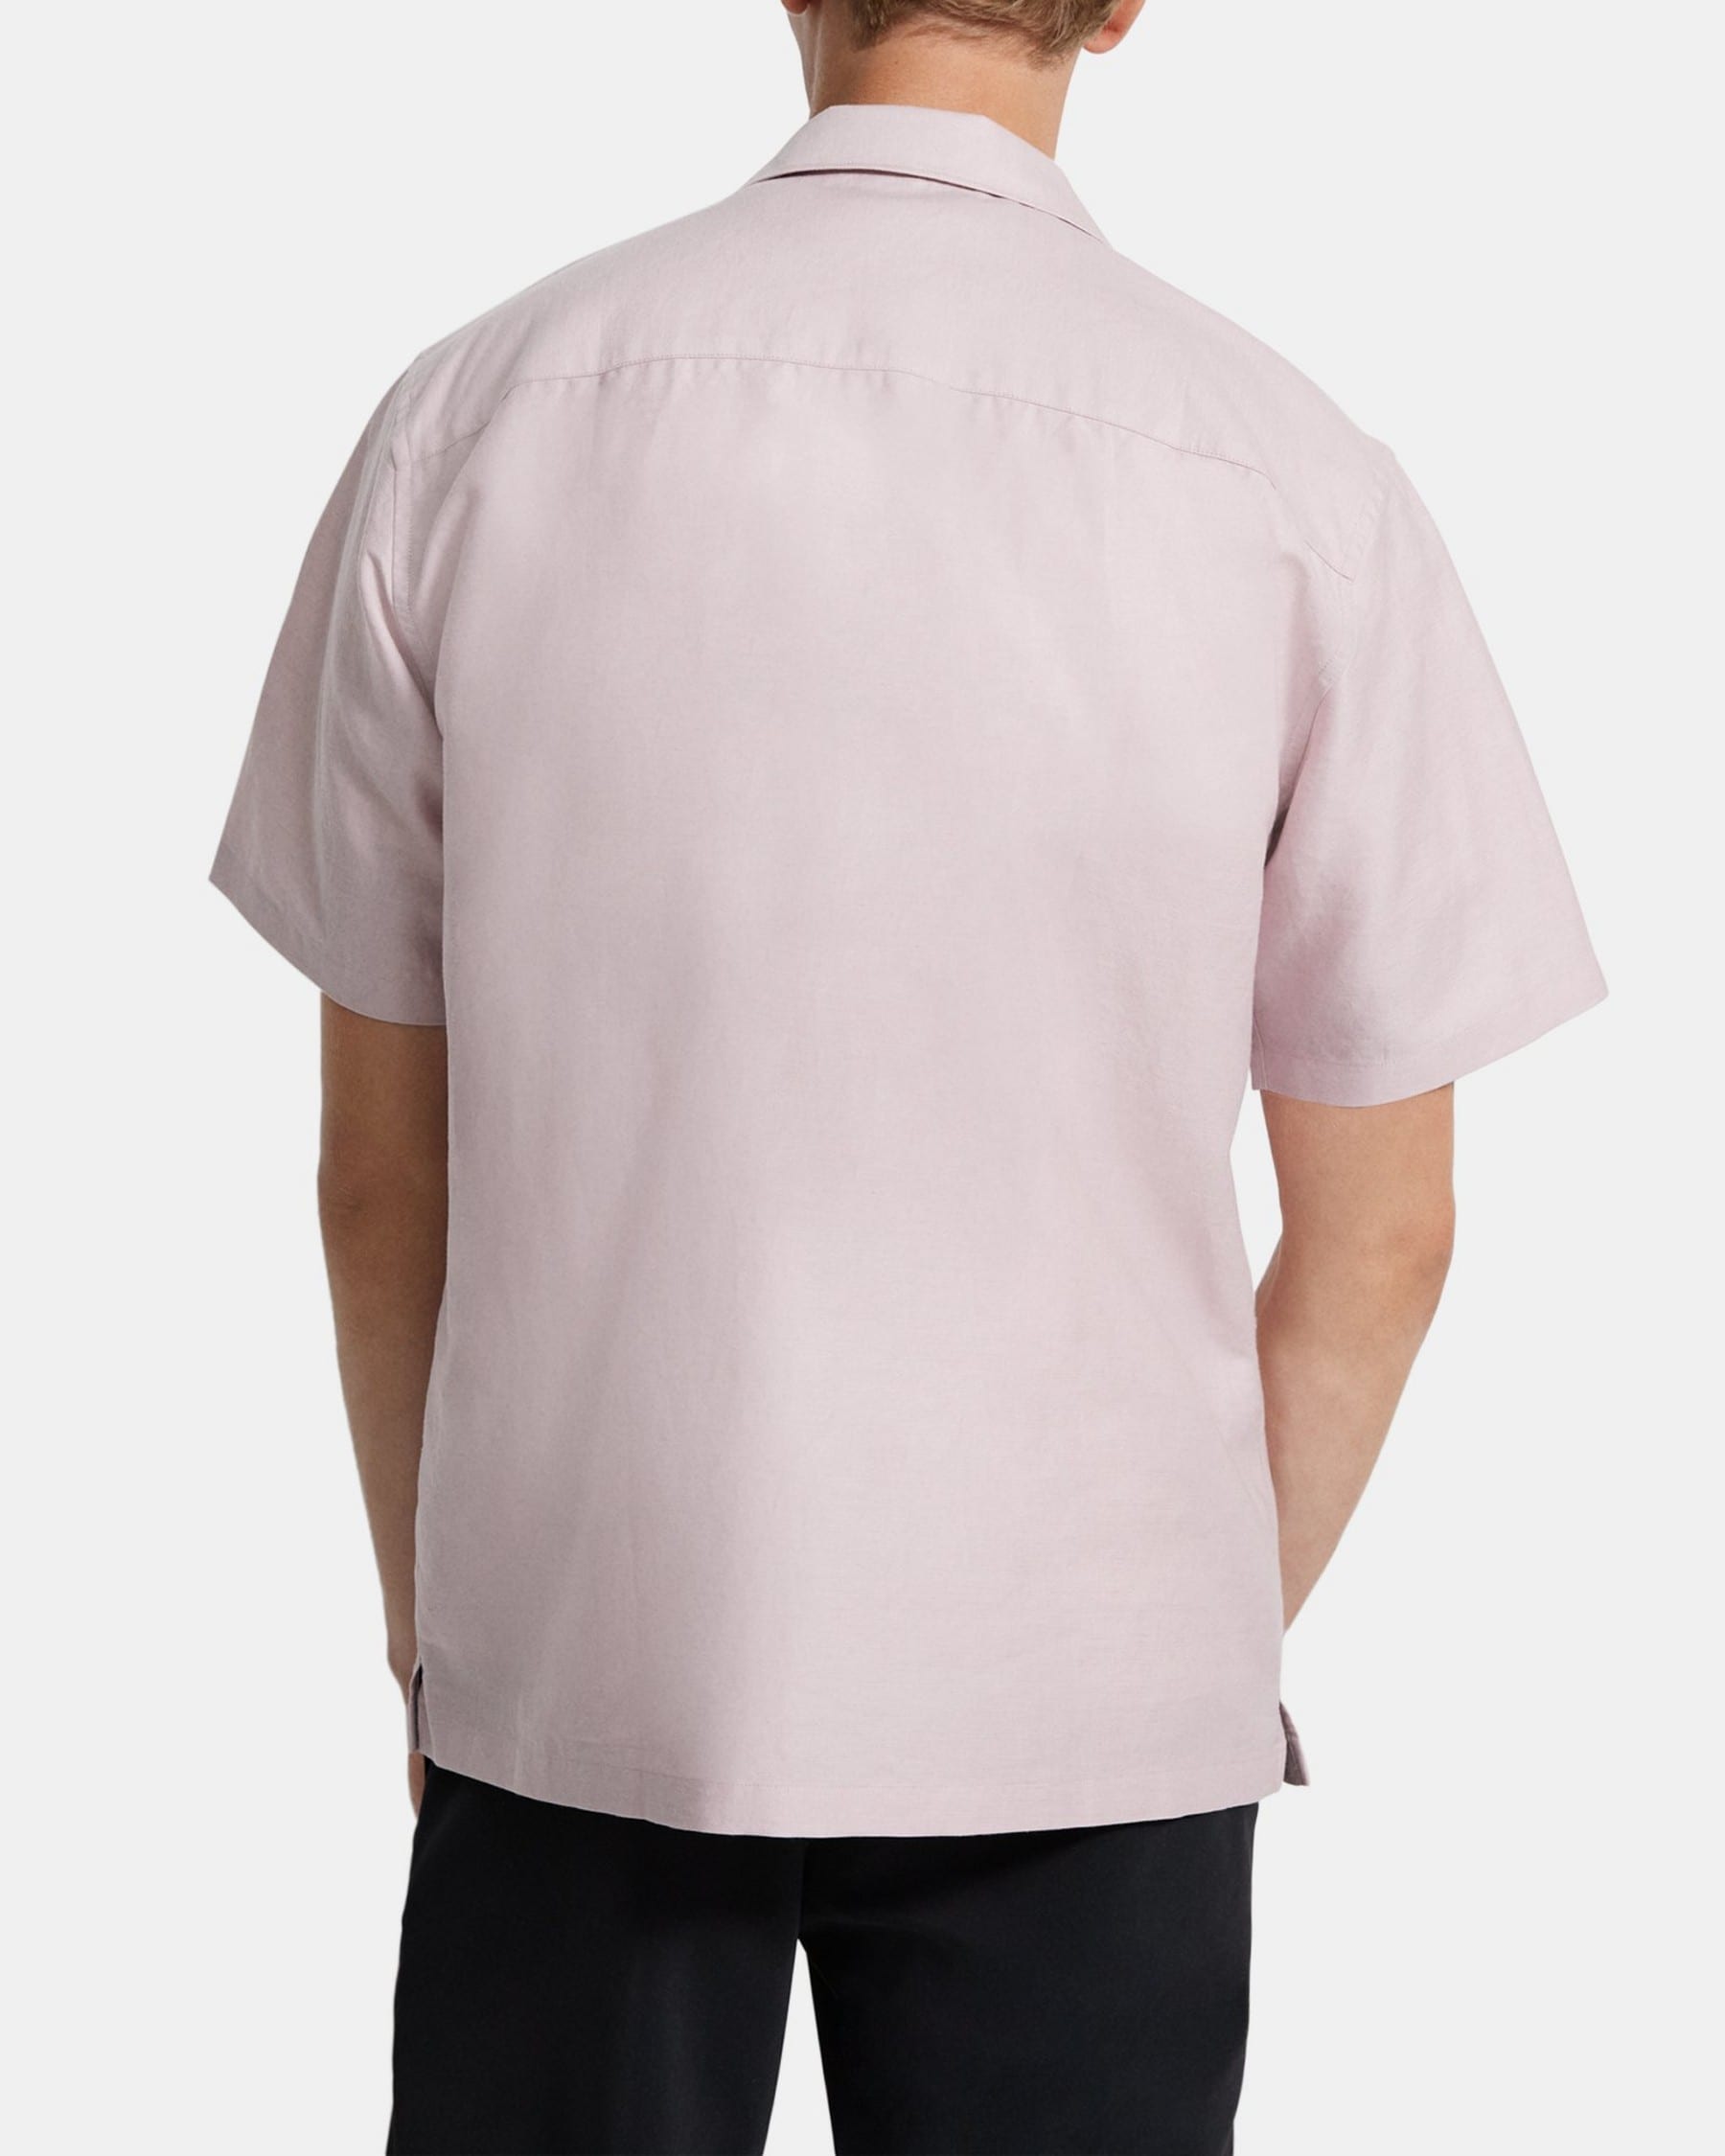 Noll Short-Sleeve Shirt in Linen Twill